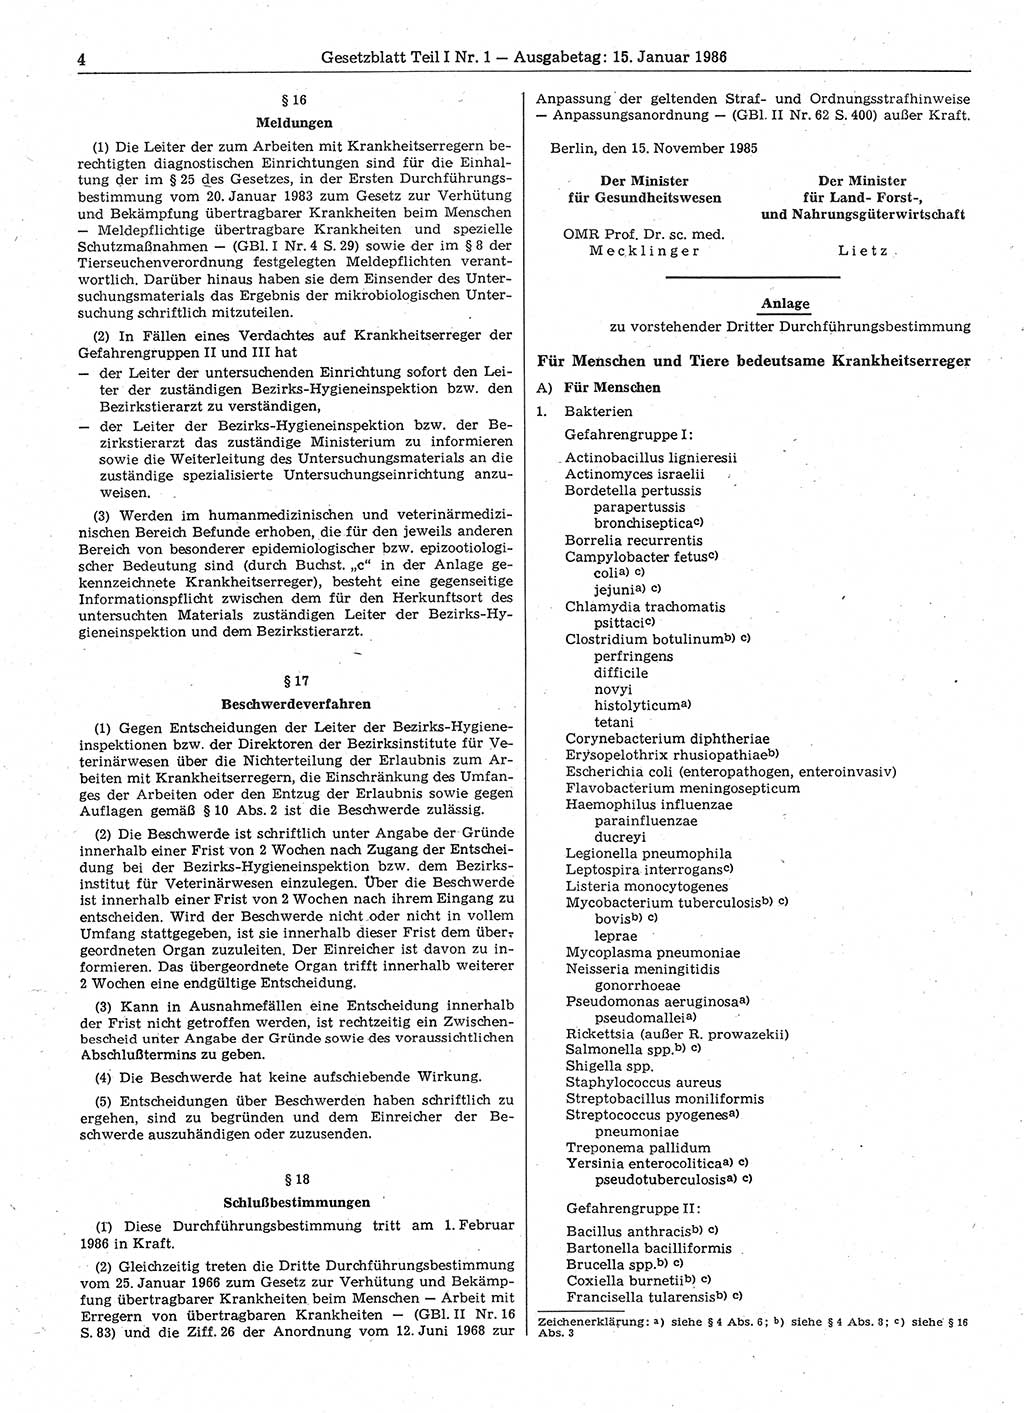 Gesetzblatt (GBl.) der Deutschen Demokratischen Republik (DDR) Teil Ⅰ 1986, Seite 4 (GBl. DDR Ⅰ 1986, S. 4)